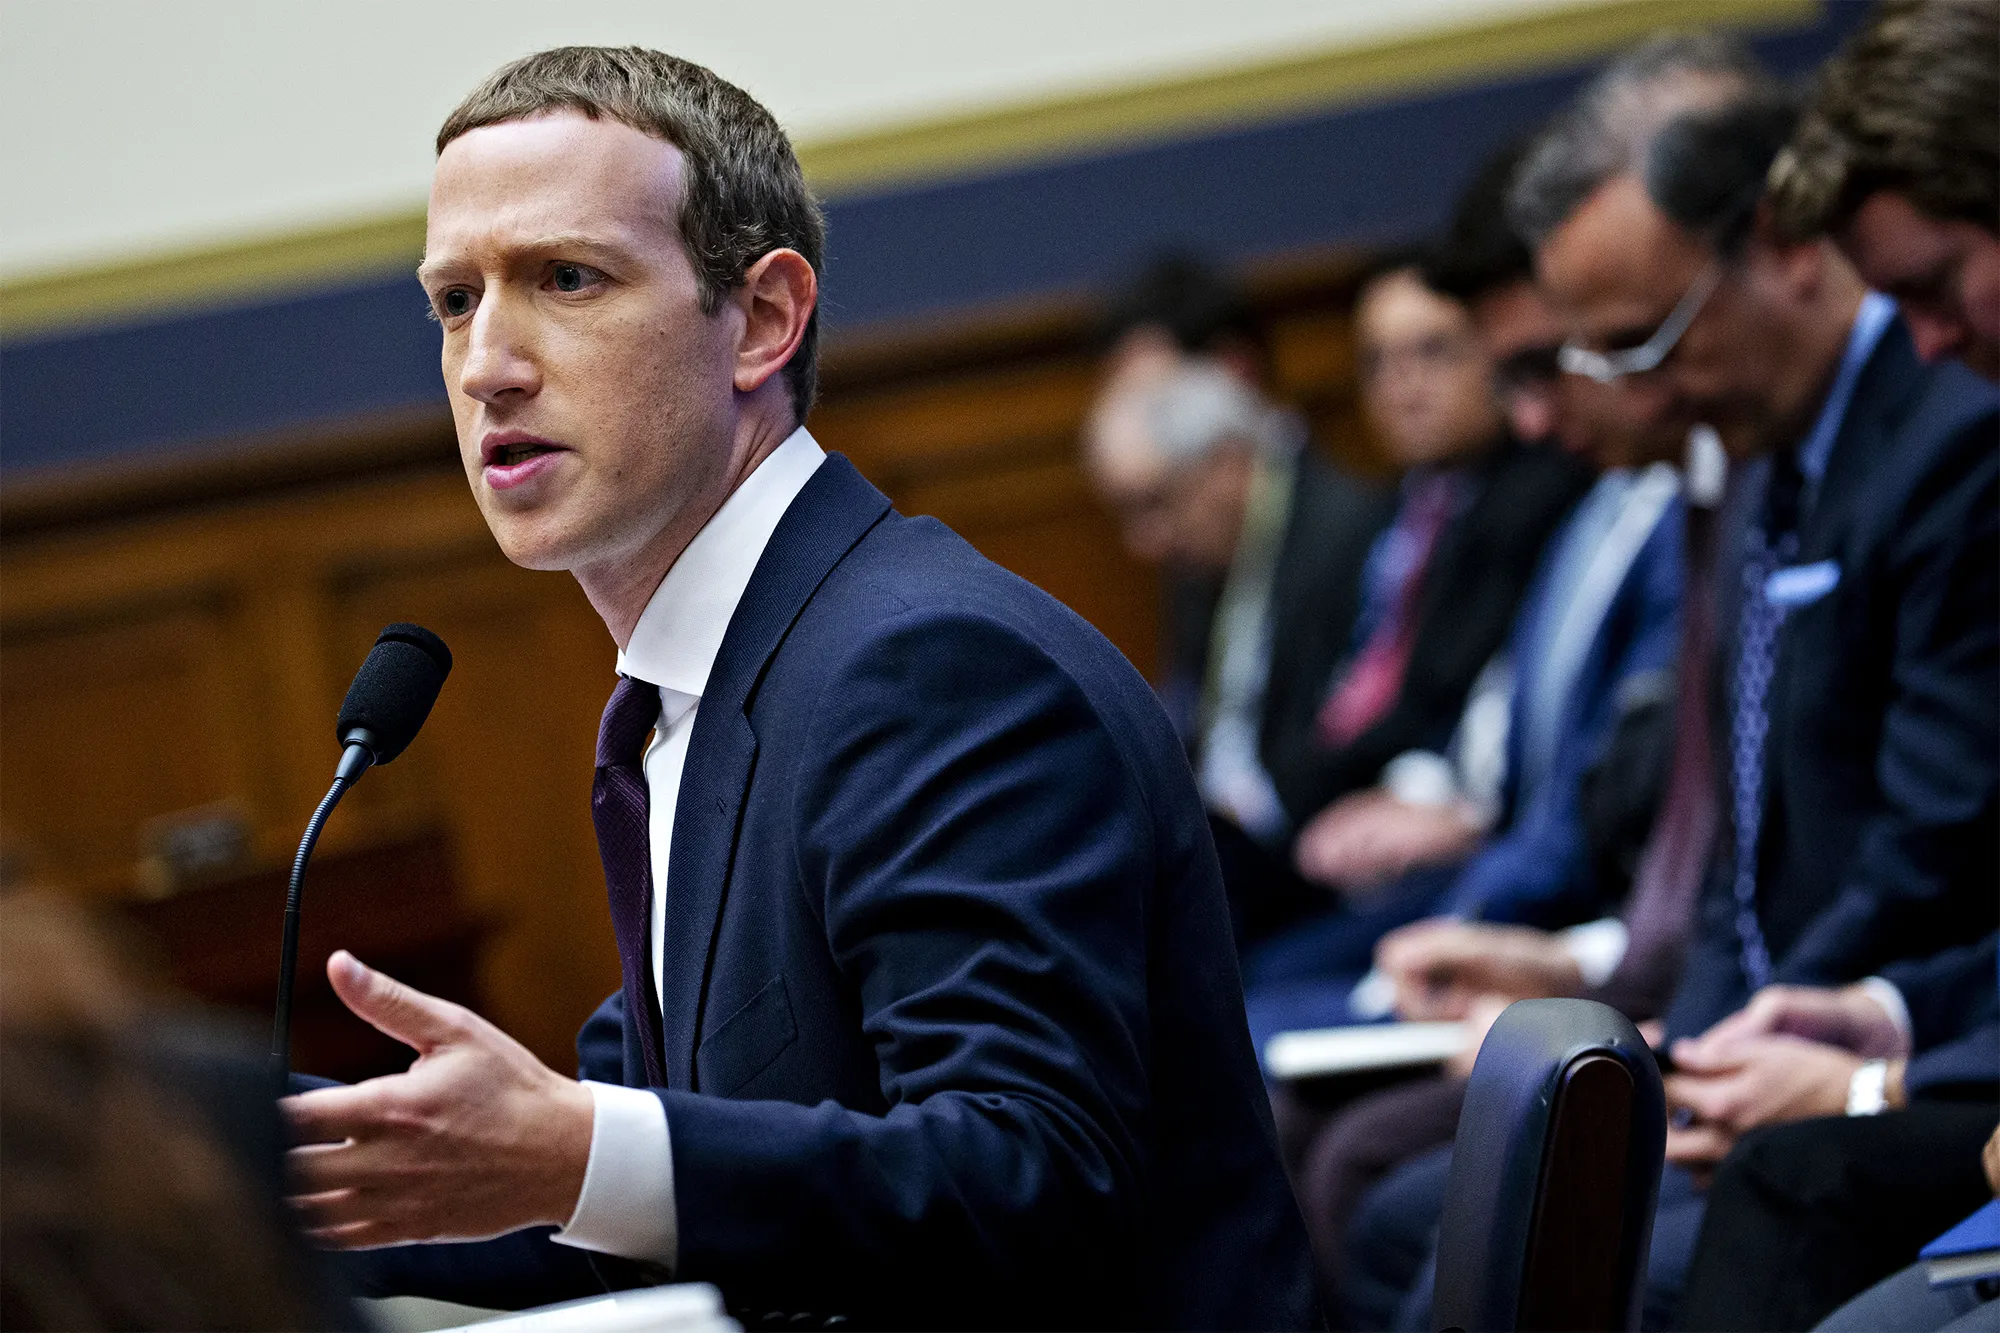 Mark Zuckerberg, sosyal ağ sitesi Facebook'u Harvard Üniversitesi'ndeki yurt odasında kurdu. Zuckerberg, ikinci sınıftan sonra üniversiteden ayrılarak kullanıcı sayısı iki milyarı aşan siteye yoğunlaştı ve bu da Zuckerberg'i kat kat milyarder yaptı. Facebook'un doğuşu 2010 yapımı The Social Network filminde anlatılmıştır.